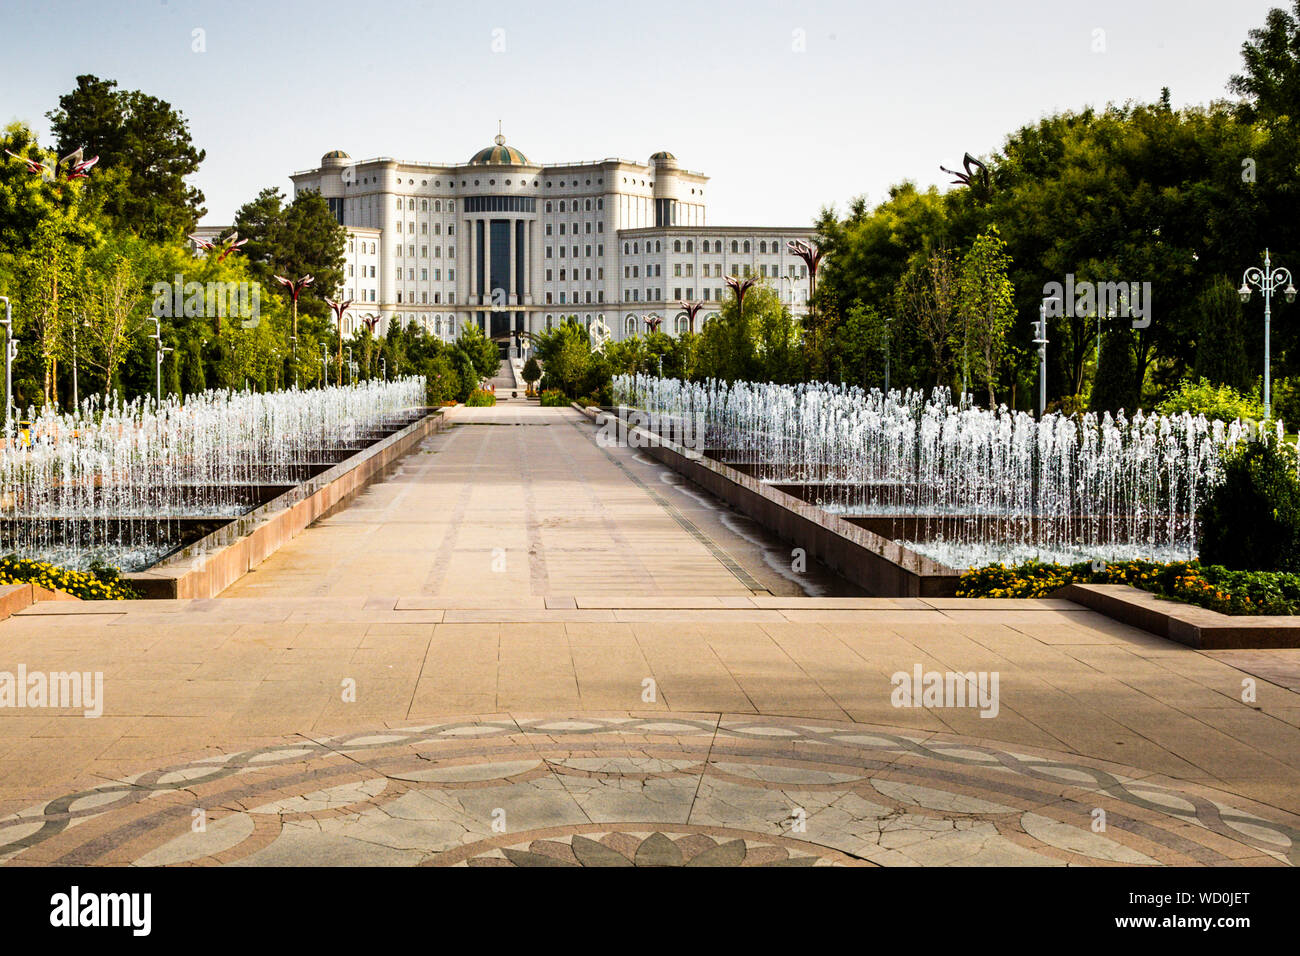 Aperta nel 2012, la Biblioteca Nazionale è la più grande biblioteca dell'Asia Centrale. Su nove piani, ci dovrebbe essere spazio per molti altri libri sugli scaffali. Biblioteca Nazionale nel Parco Rudaki di Dushanbe, Tagikistan Foto Stock